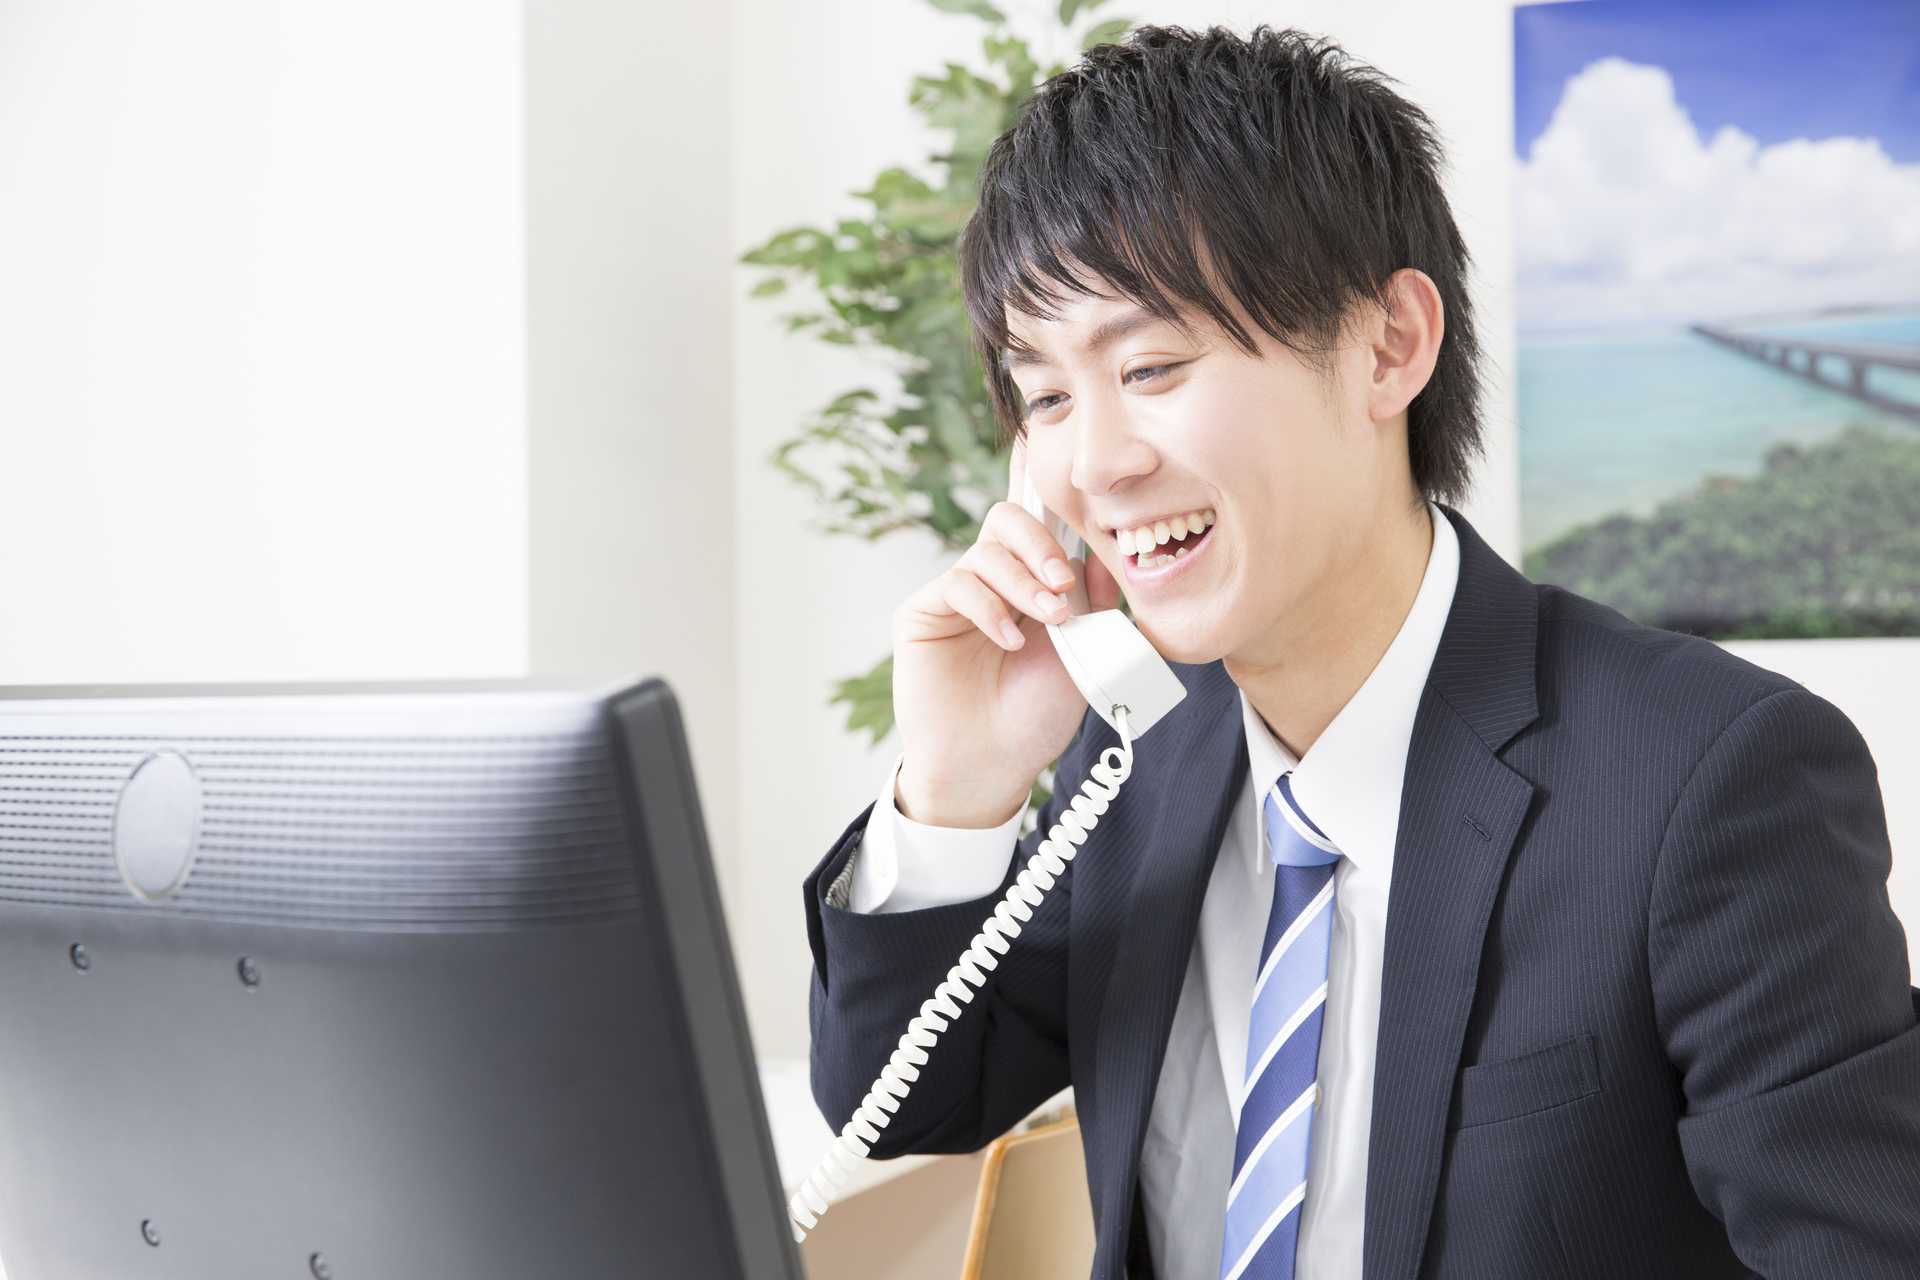 電話対応は、新人だけの仕事ではない。 電話対応の30のビジネスマナー HAPPY LIFESTYLE